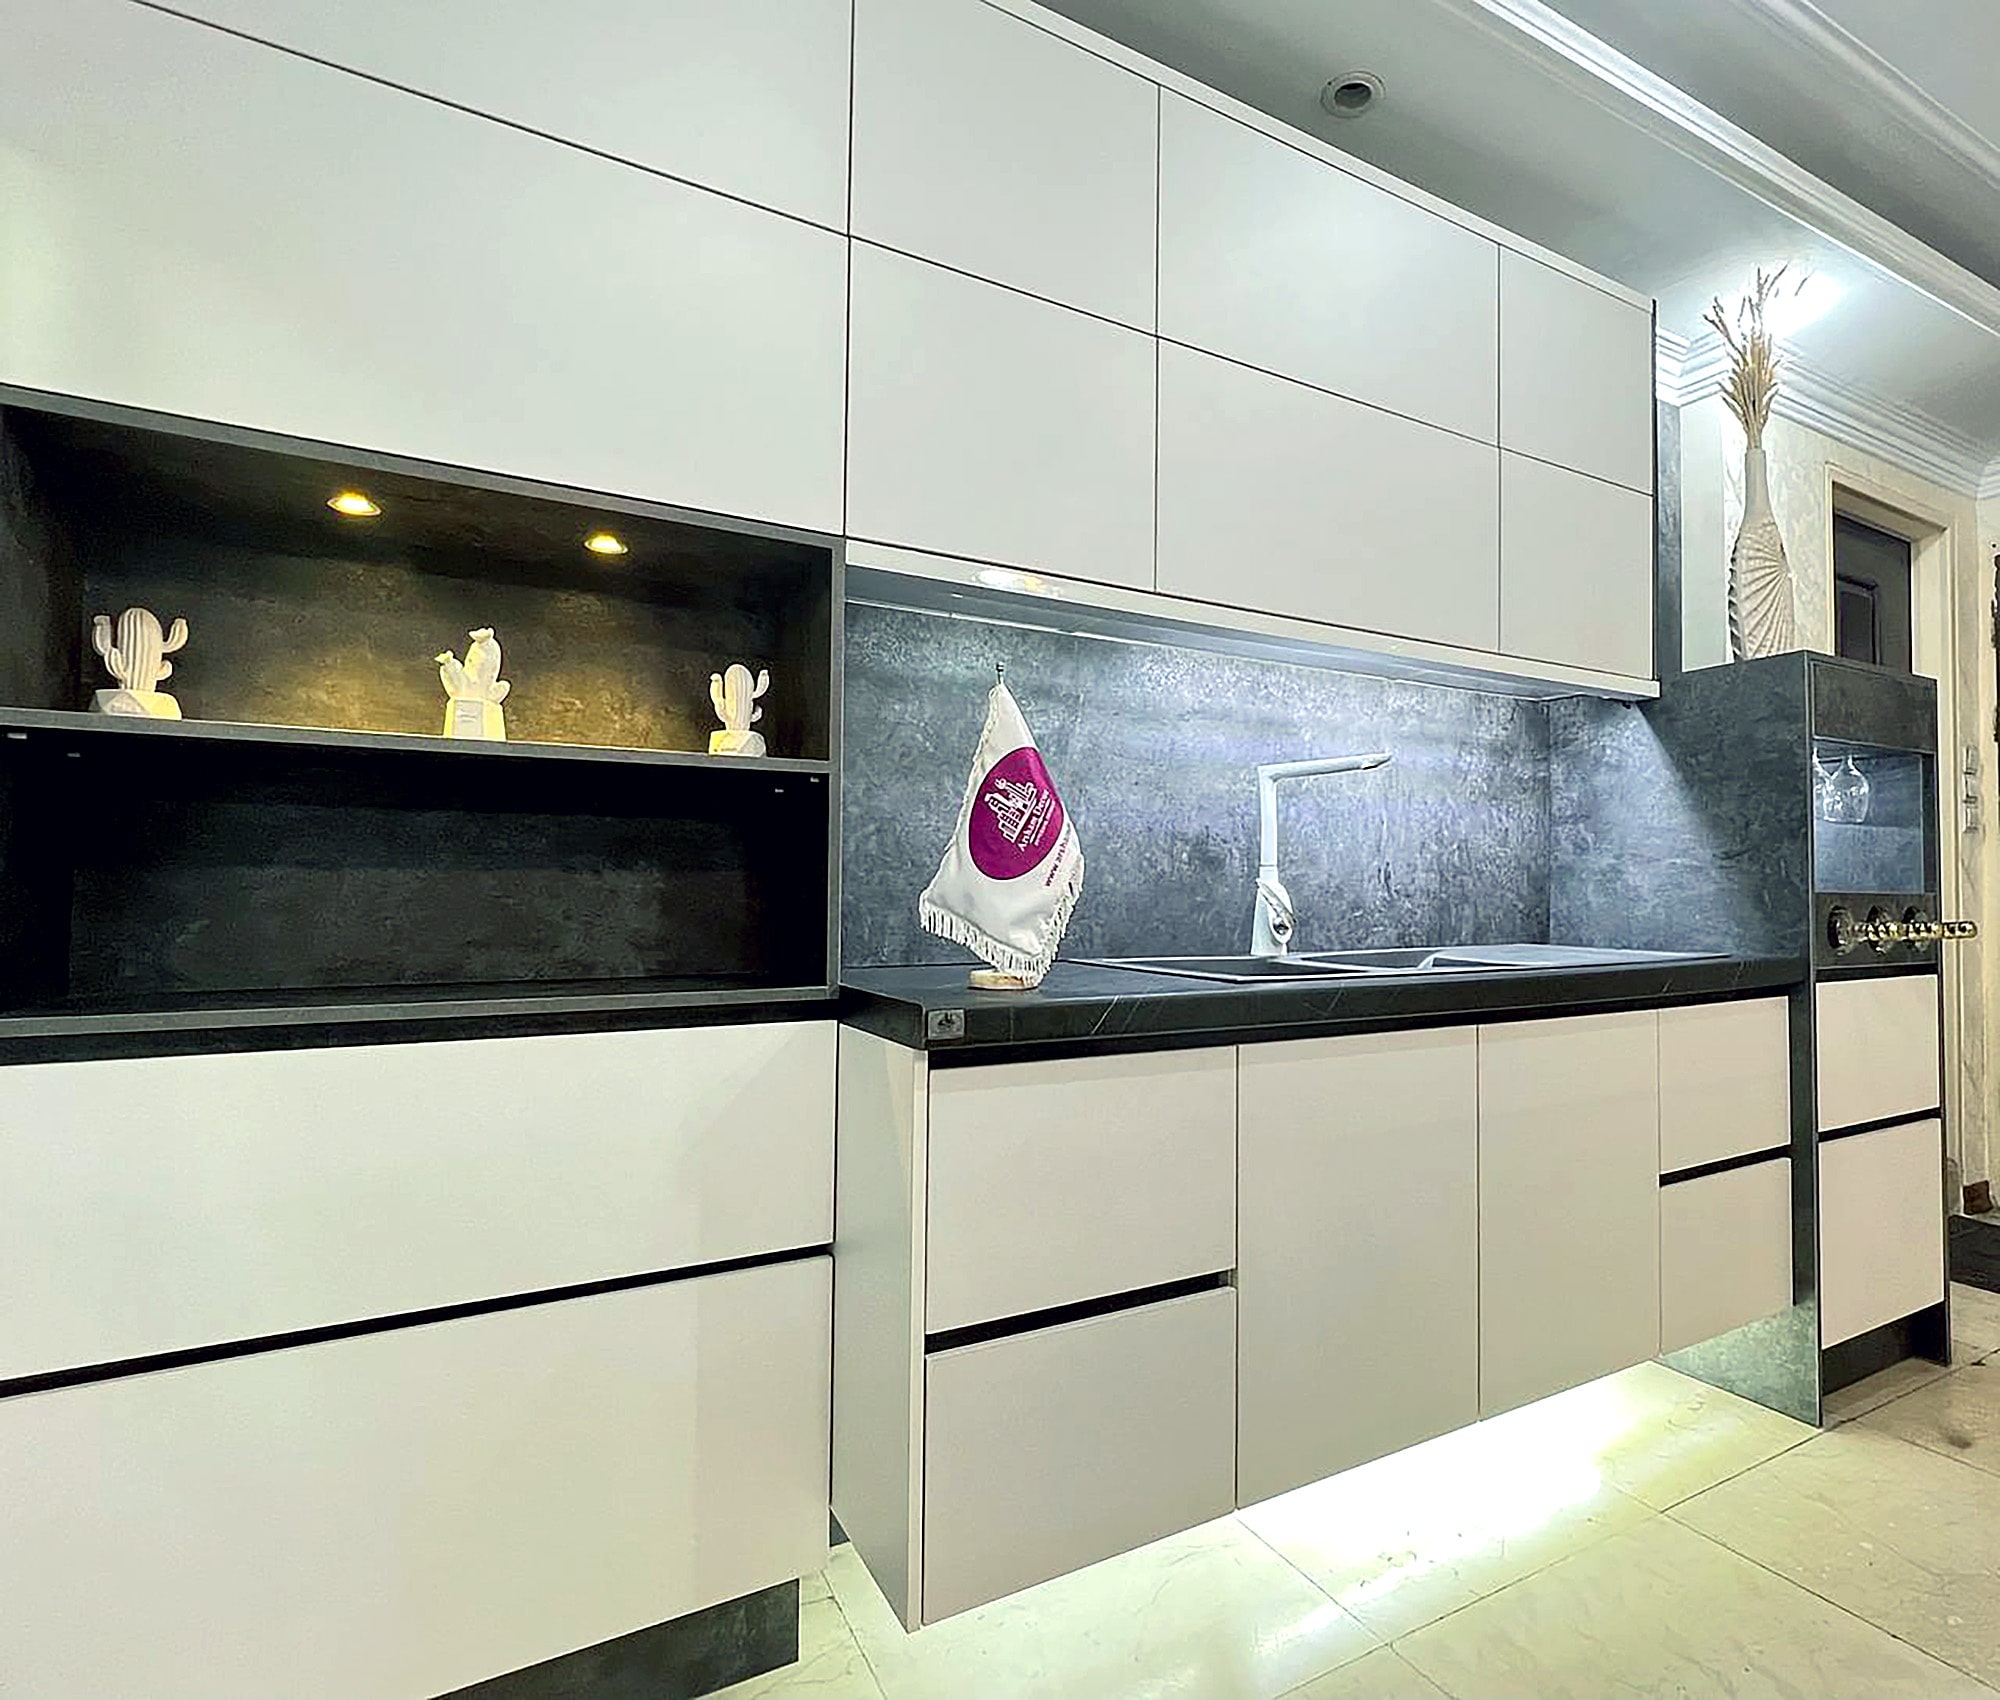 نمونه کابینت آشپزخانه های گلاس سفید طوسی زیبا در سبک مدرن